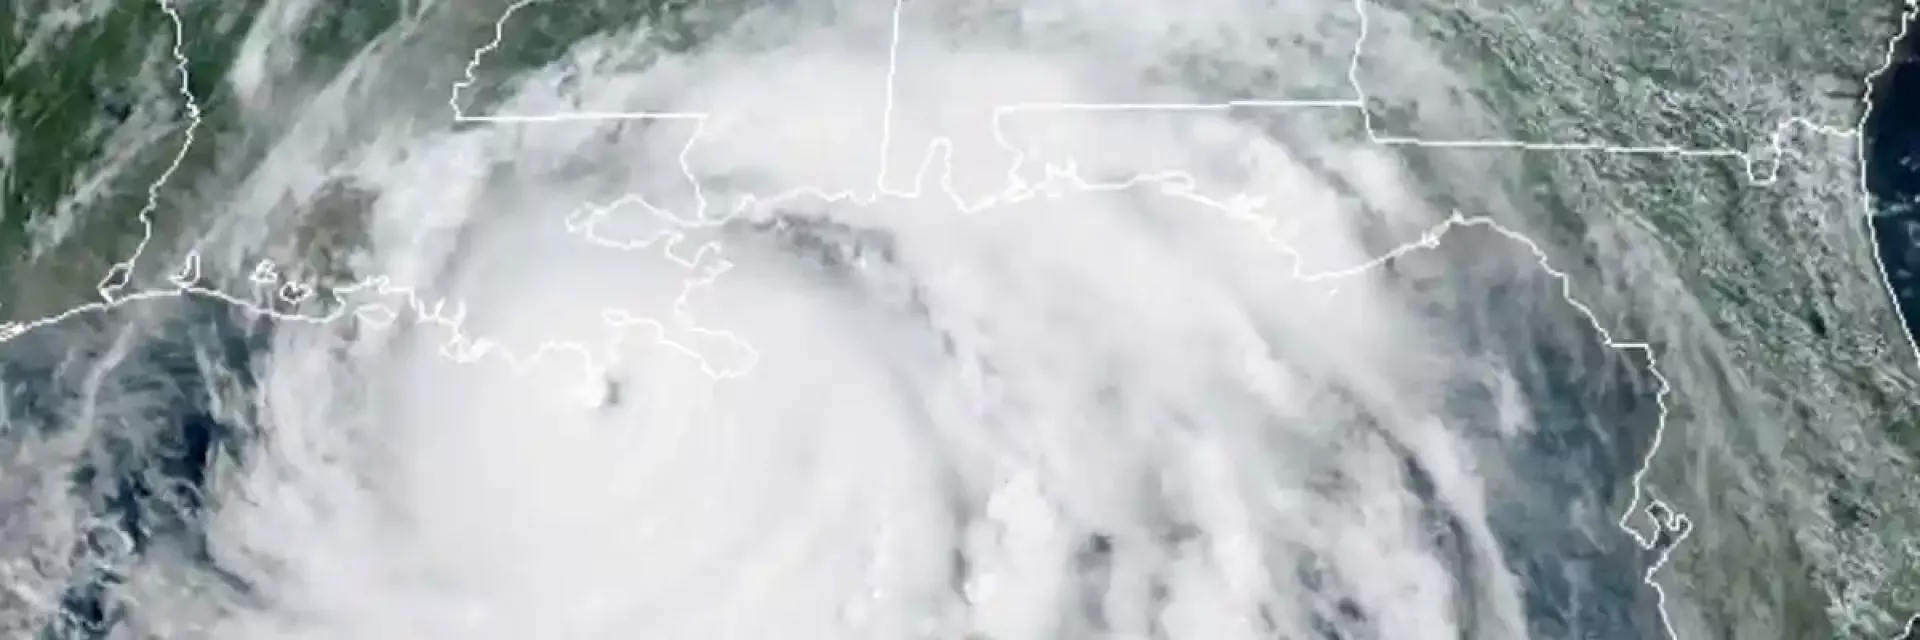 BELFOR Response to Hurricane Ida